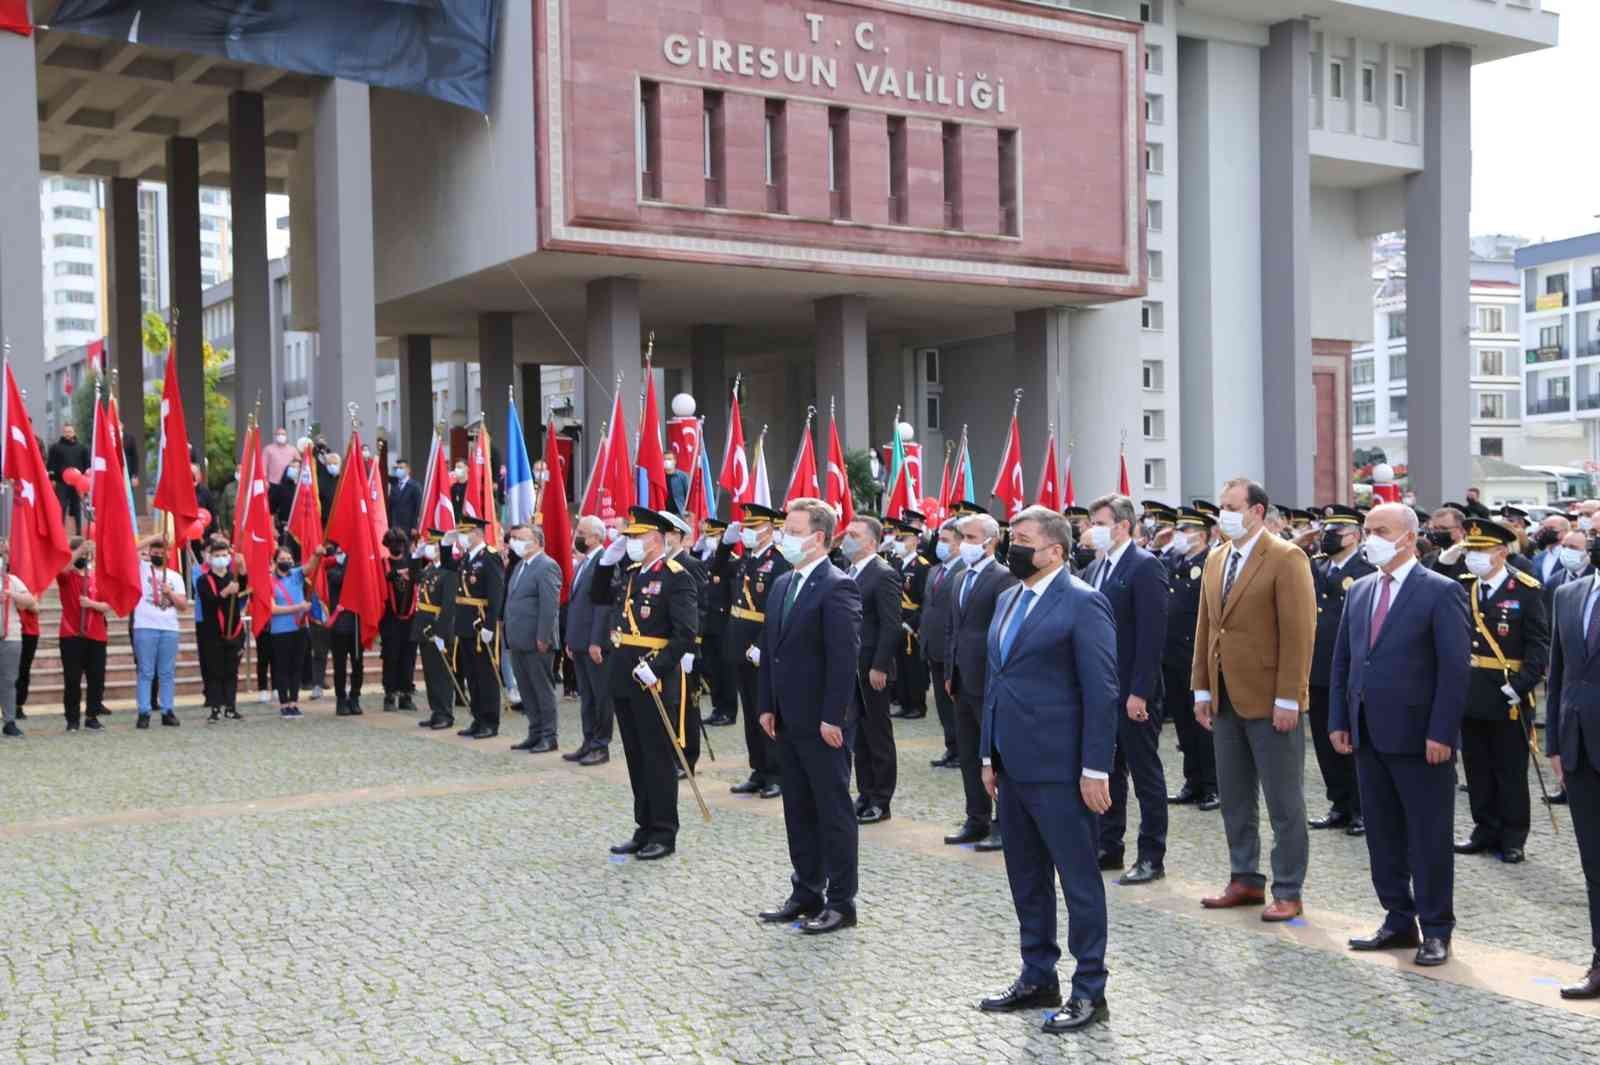 Giresun’da 29 Ekim Cumhuriyet Bayramı kutlandı #giresun